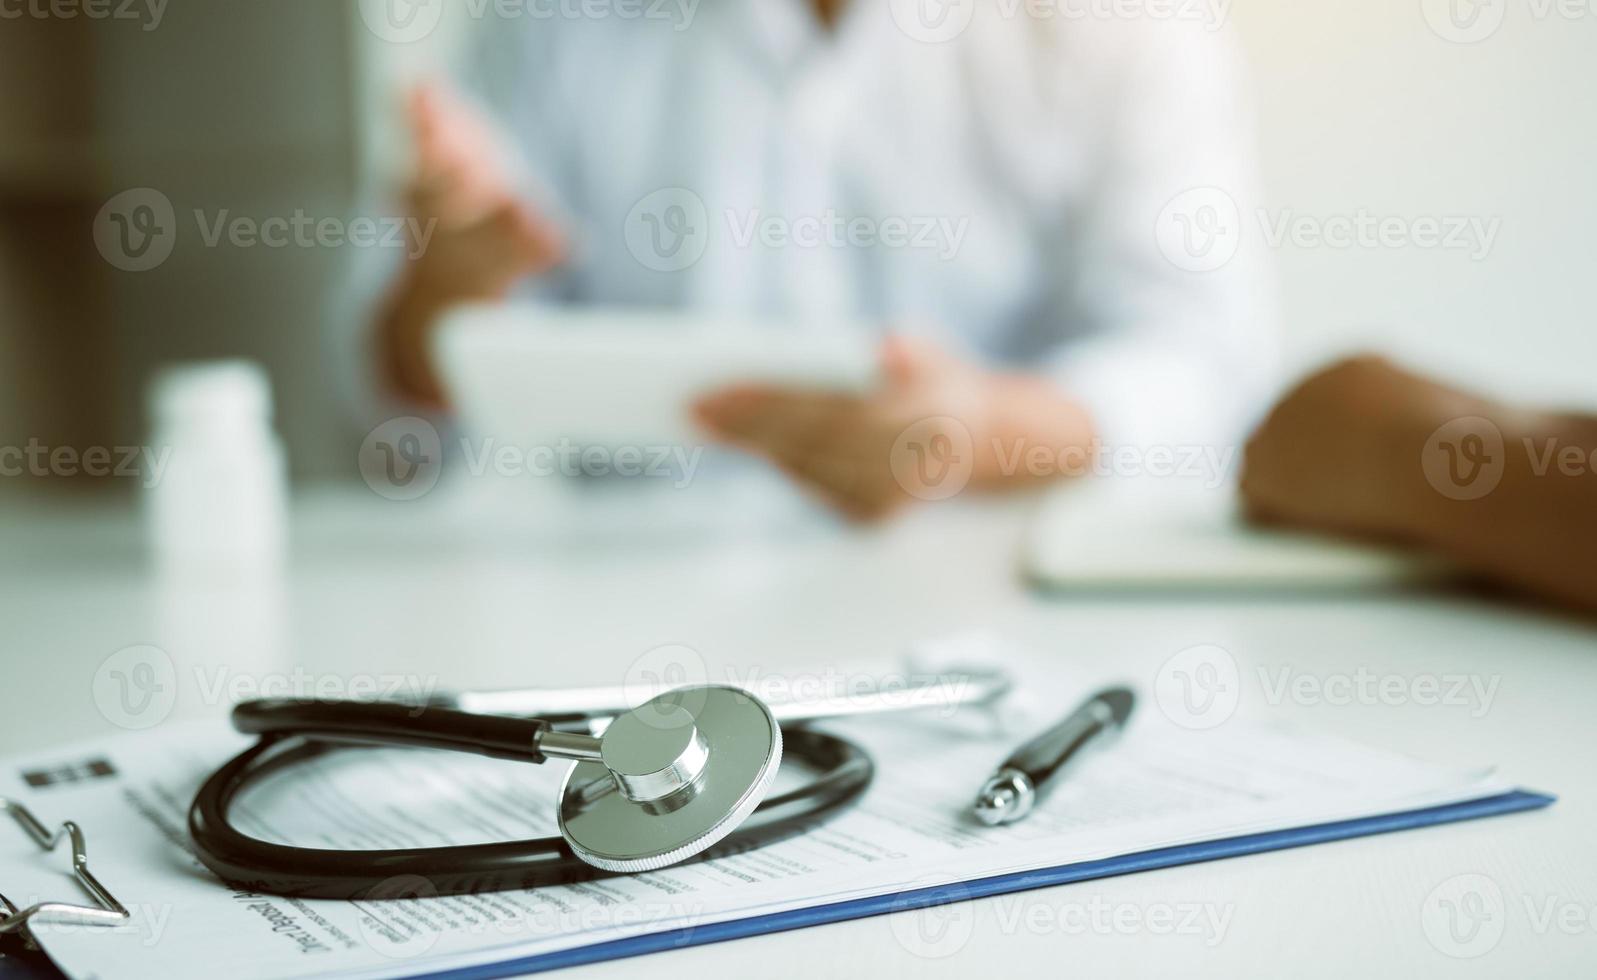 nahaufnahme stethoskop und arzt sprechen mit dem patienten in der klinik, während sie das tablet verwenden, um den patientenzustand und das behandlungsergebnis zu erklären. foto